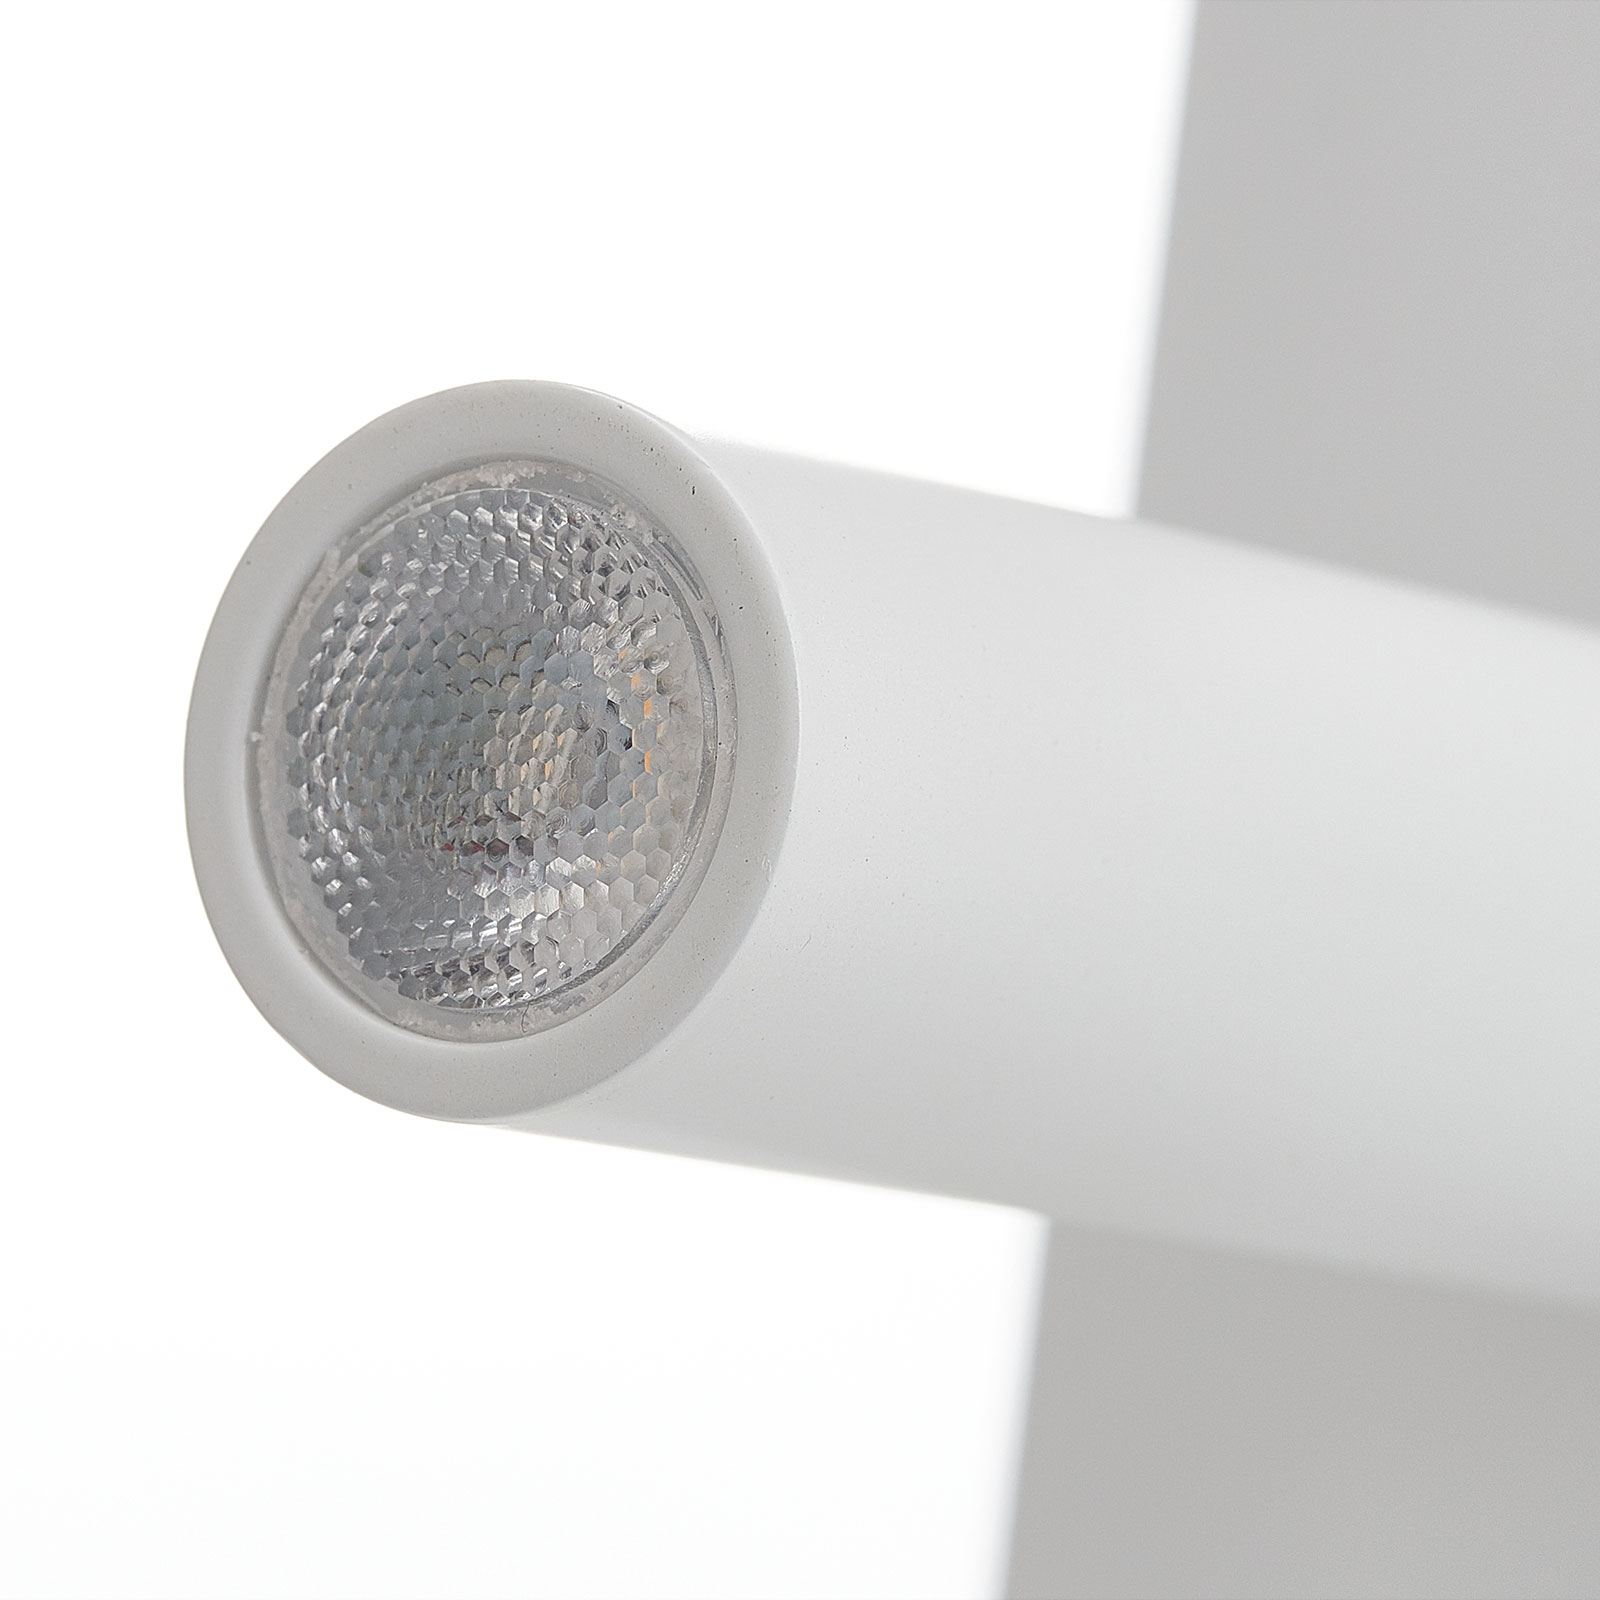 Moderní LED nástěnné světlo Suau, USB nabíjení